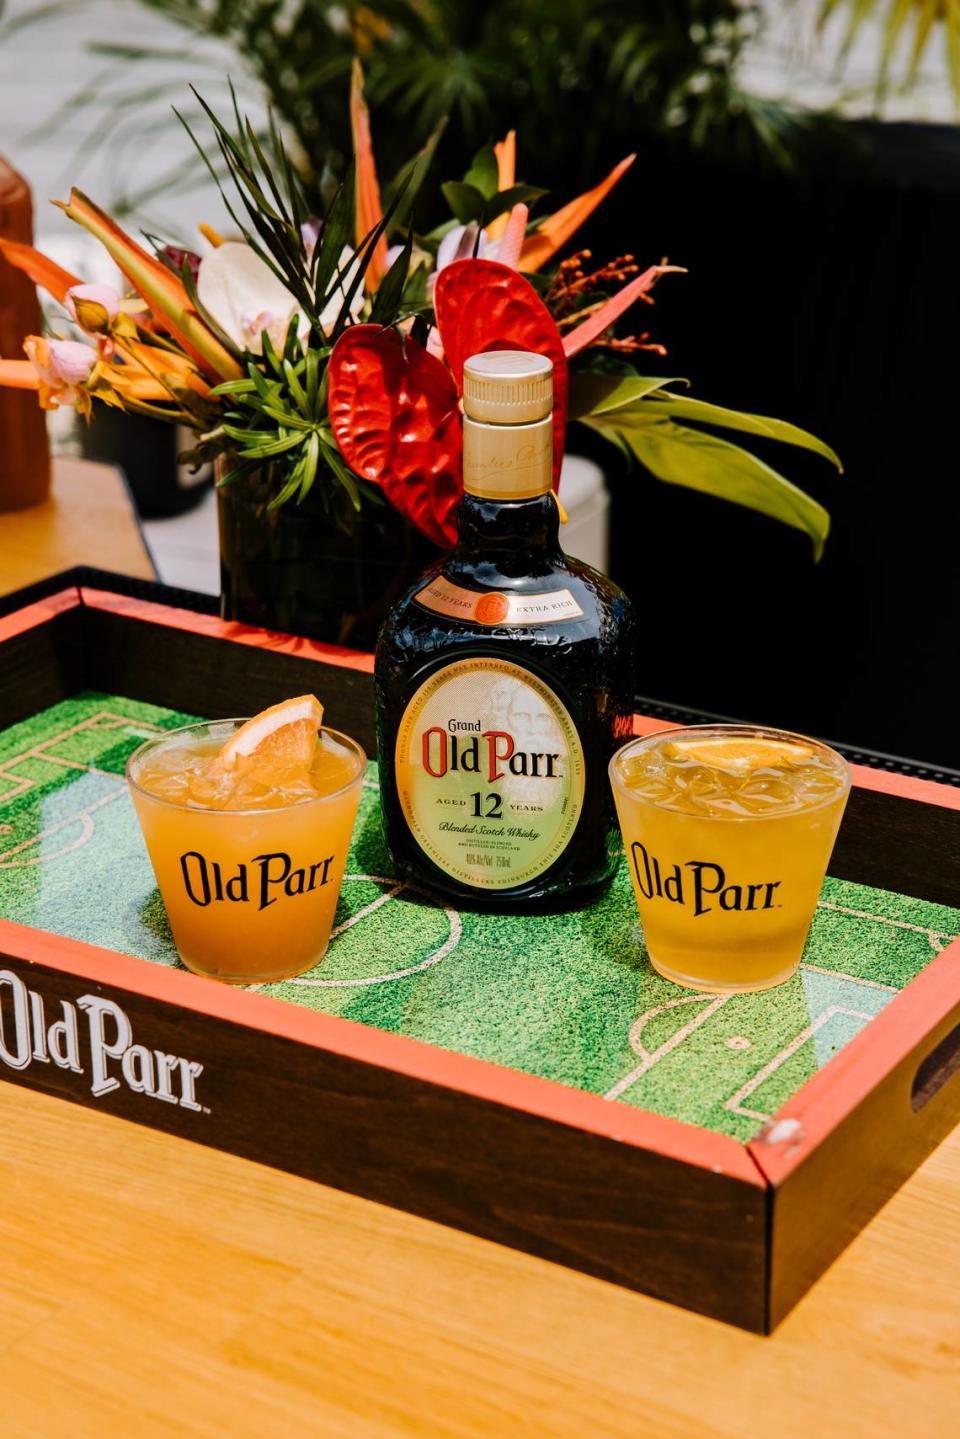 Cóctel Goalden Hour de Old Parr Whisky, incluido el cóctel Olé Olé (izquierda) creado por Roberto Carlos y Gol Parr